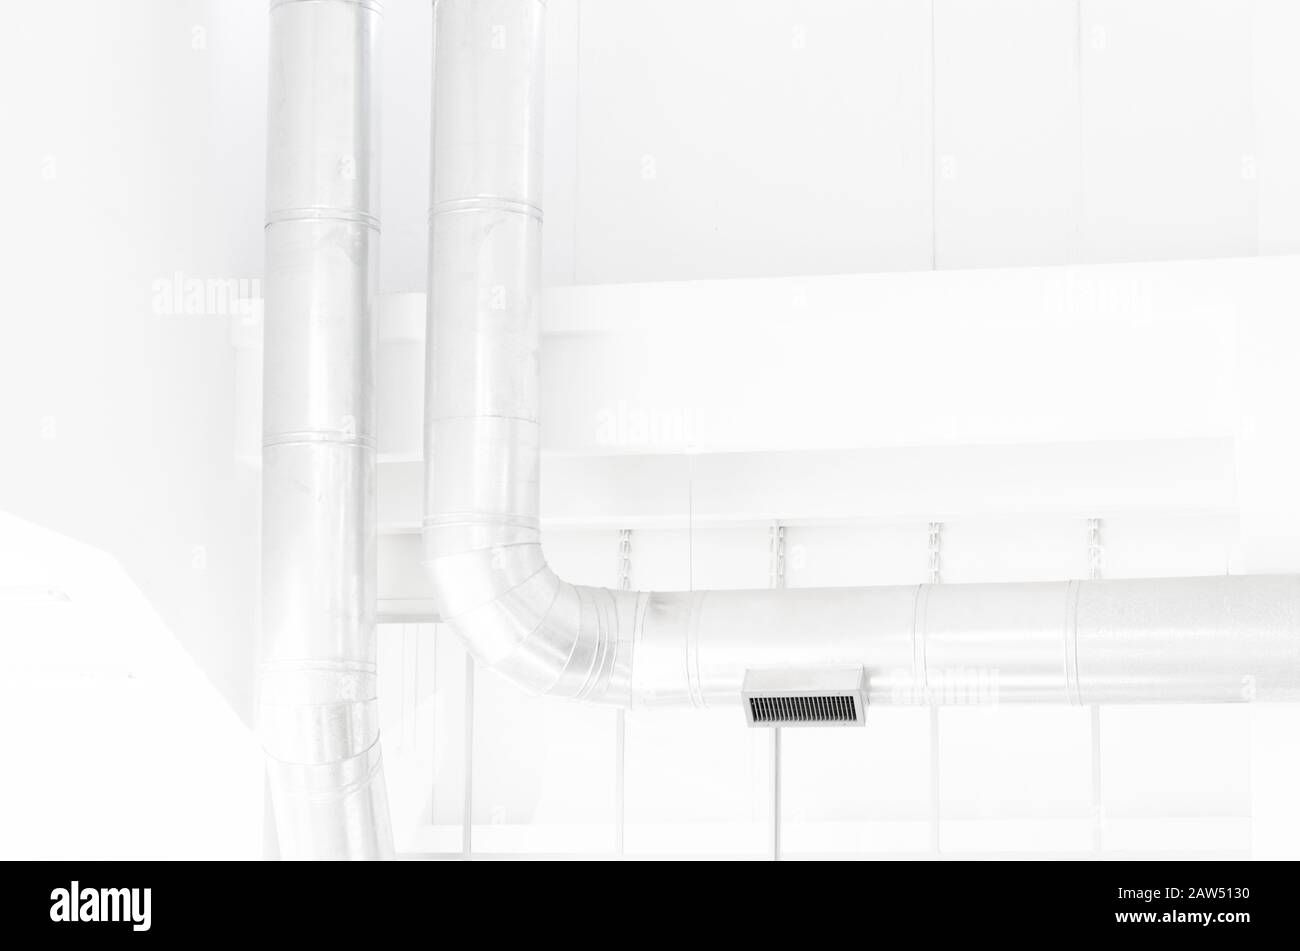 Industrielle moderne Architektur: Interieur in hellen Farben, weiße Wände und silberne Rohre Stockfoto